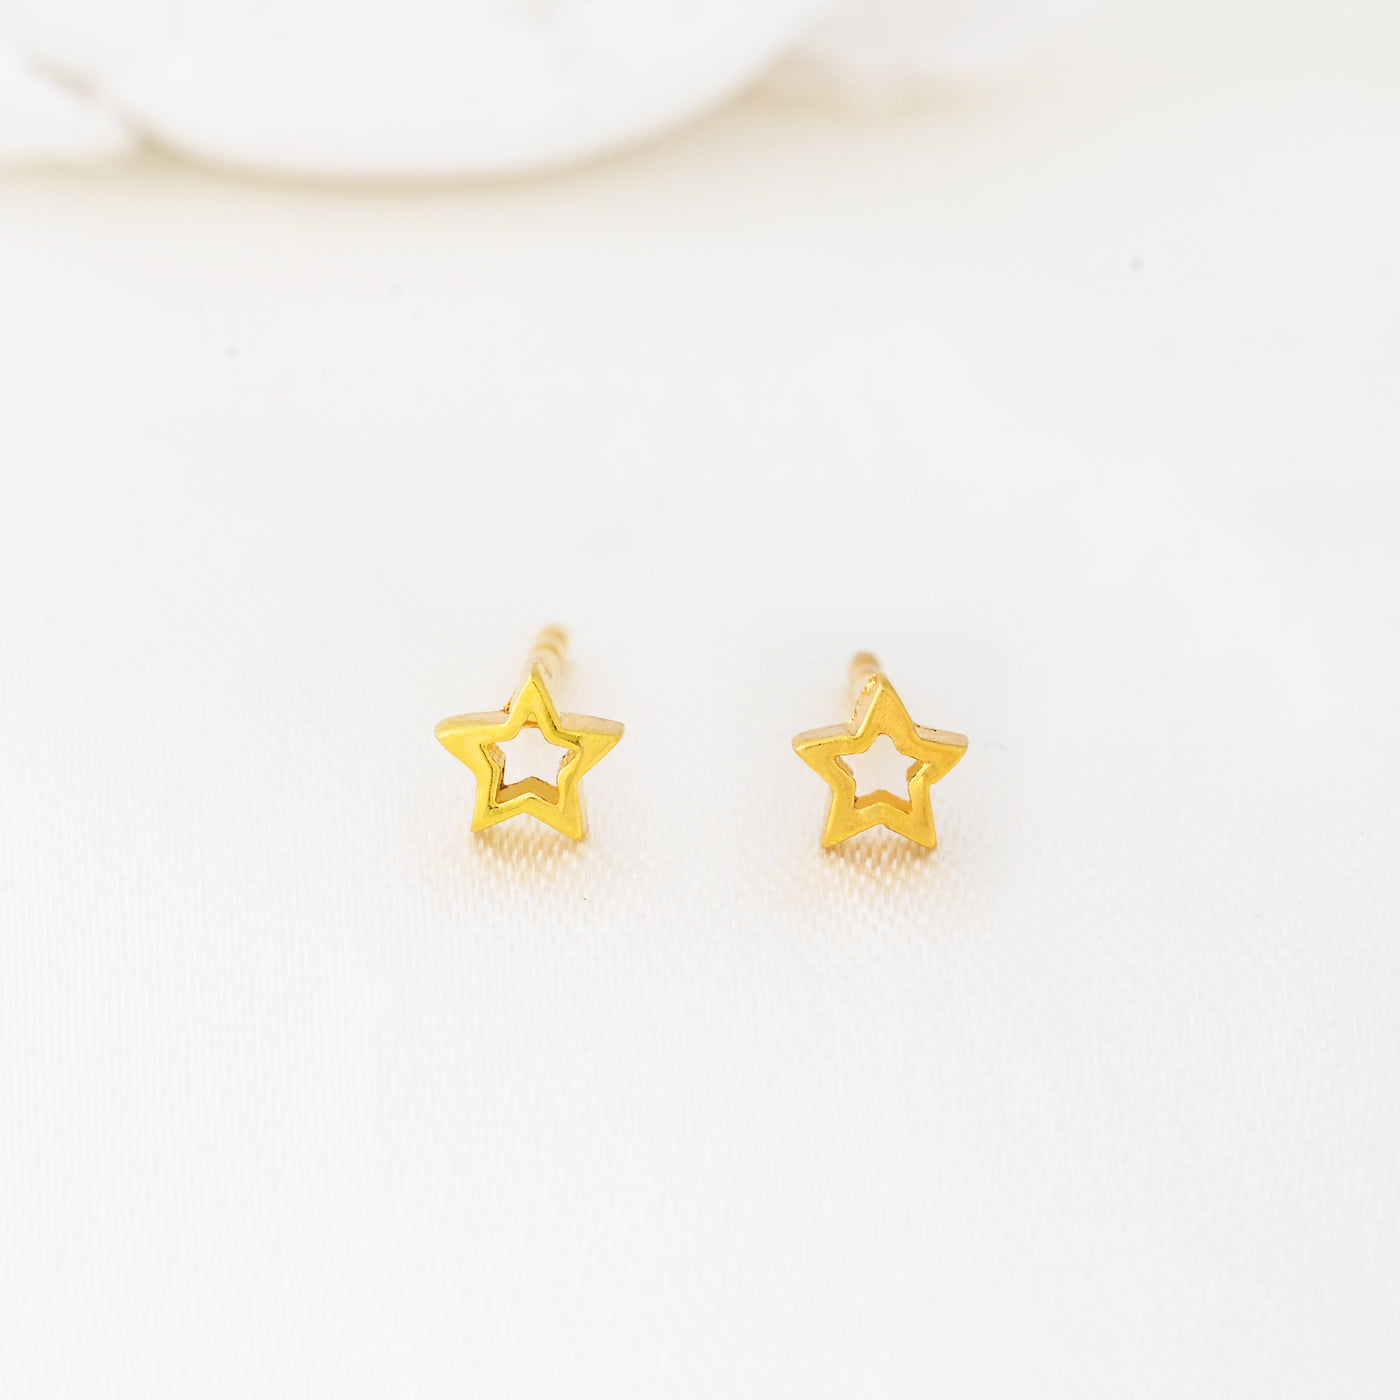 Minimalist Star Shaped Stud Earrings Gold Celestial Earrings